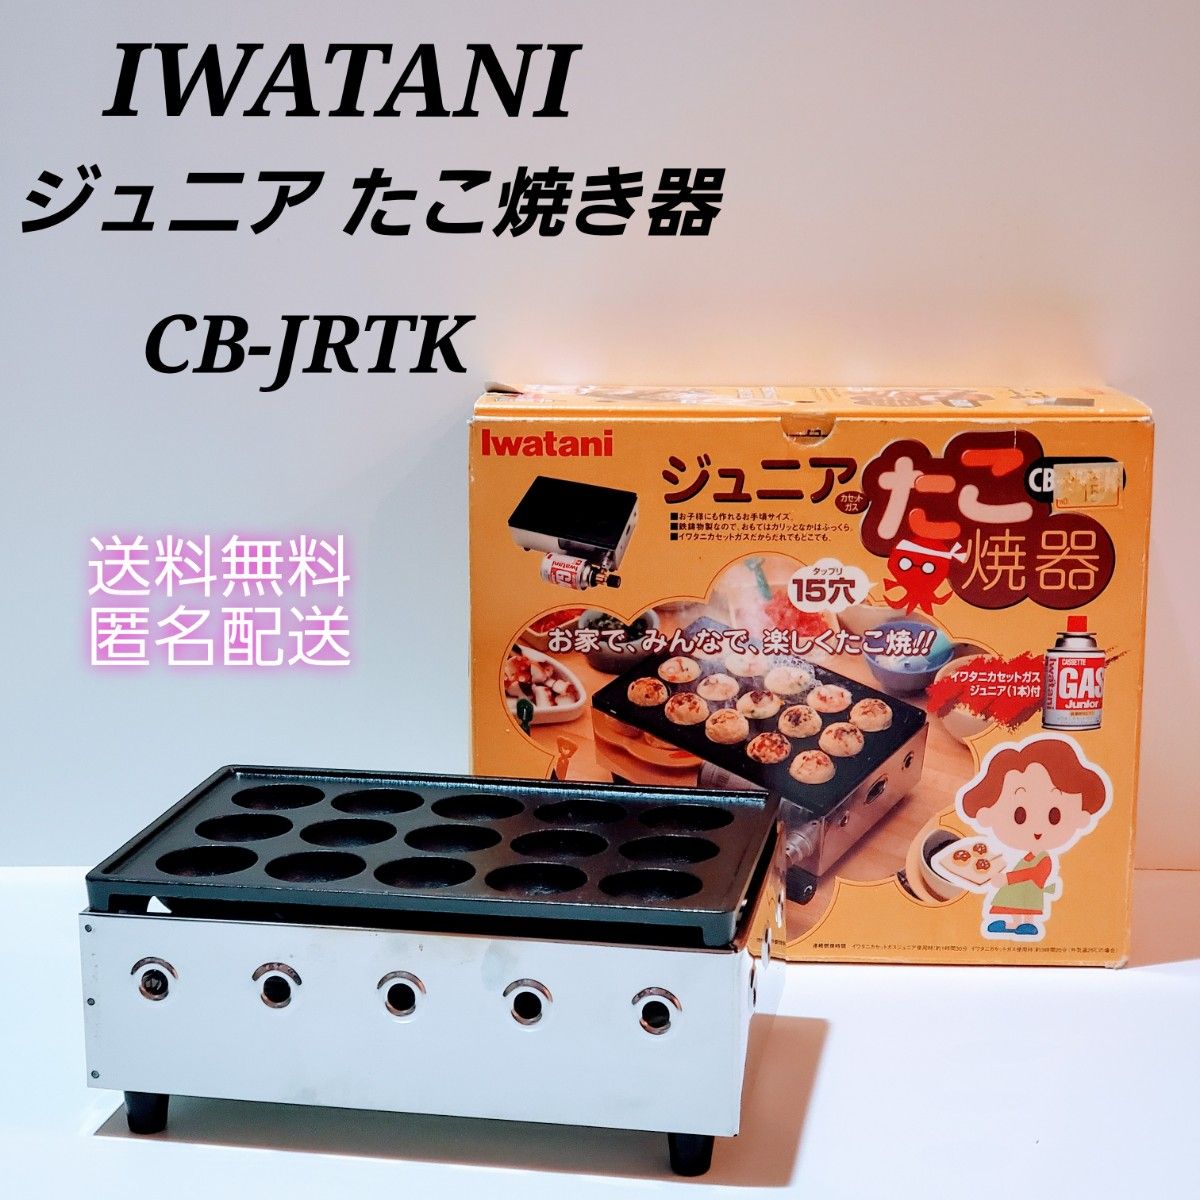 Iwatani カセットガス ジュニア たこ焼器 CB-JRTK